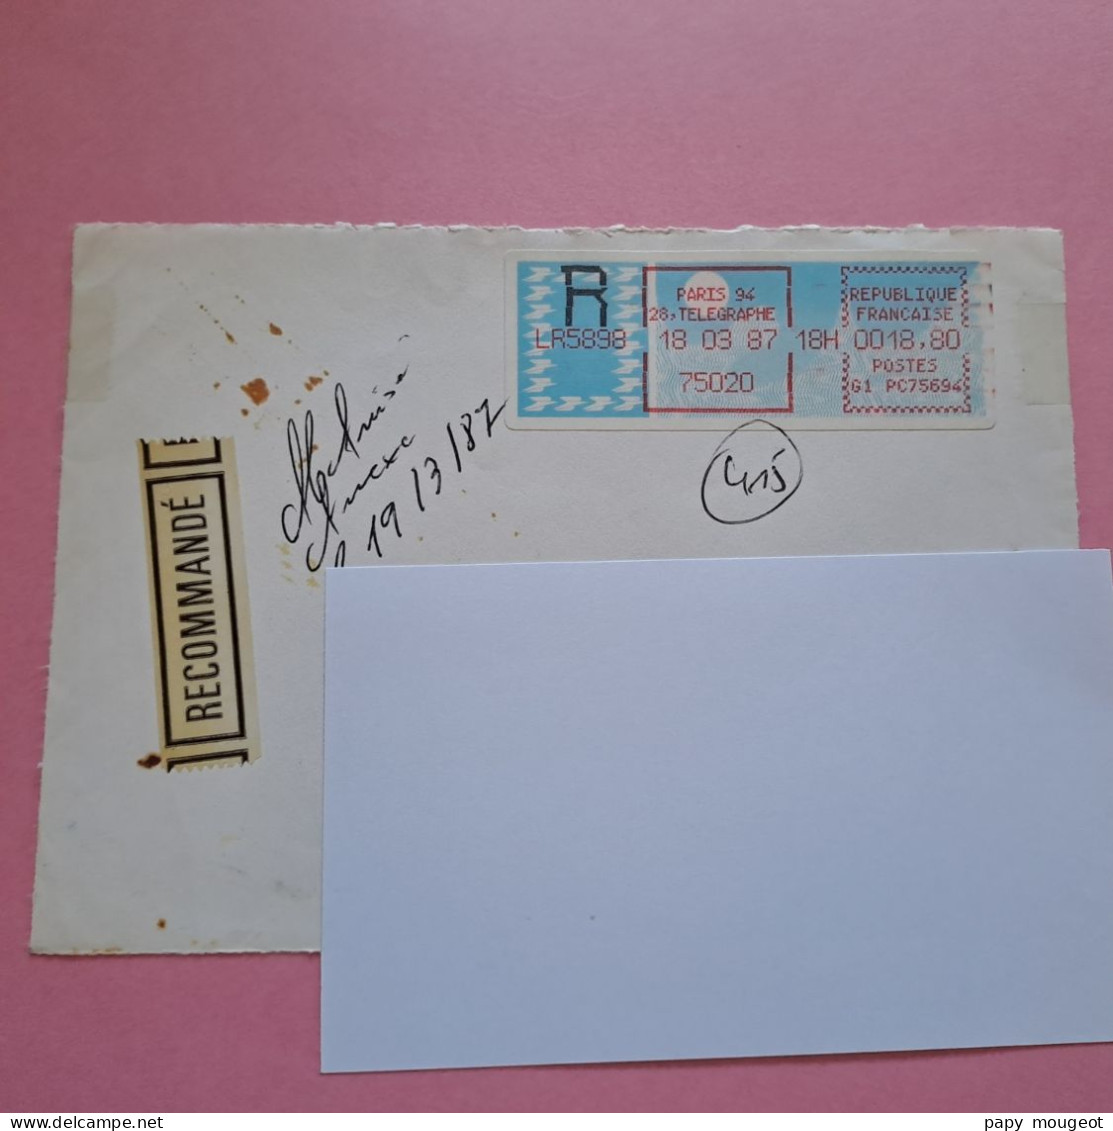 Paris 94 - 75020 - 18-03-1987 LR Poste G1 PC75694 - Devant D'enveloppe - 1985 « Carrier » Papier